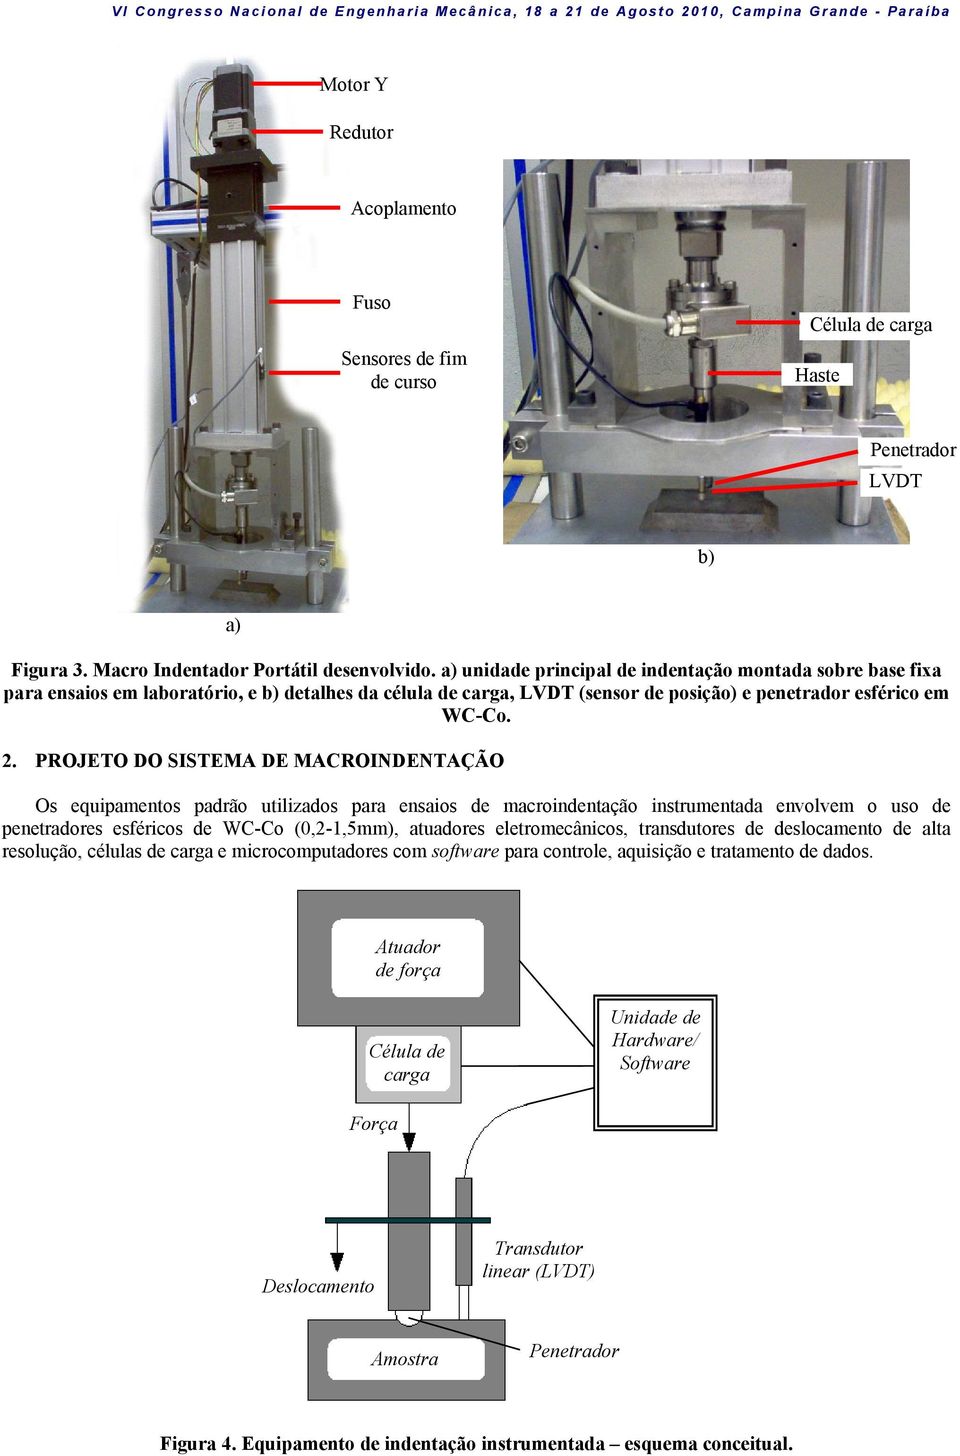 PROJETO DO SISTEMA DE MACROINDENTAÇÃO Os equipamentos padrão utilizados para ensaios de macroindentação instrumentada envolvem o uso de penetradores esféricos de WC-Co (0,2-1,5mm), atuadores